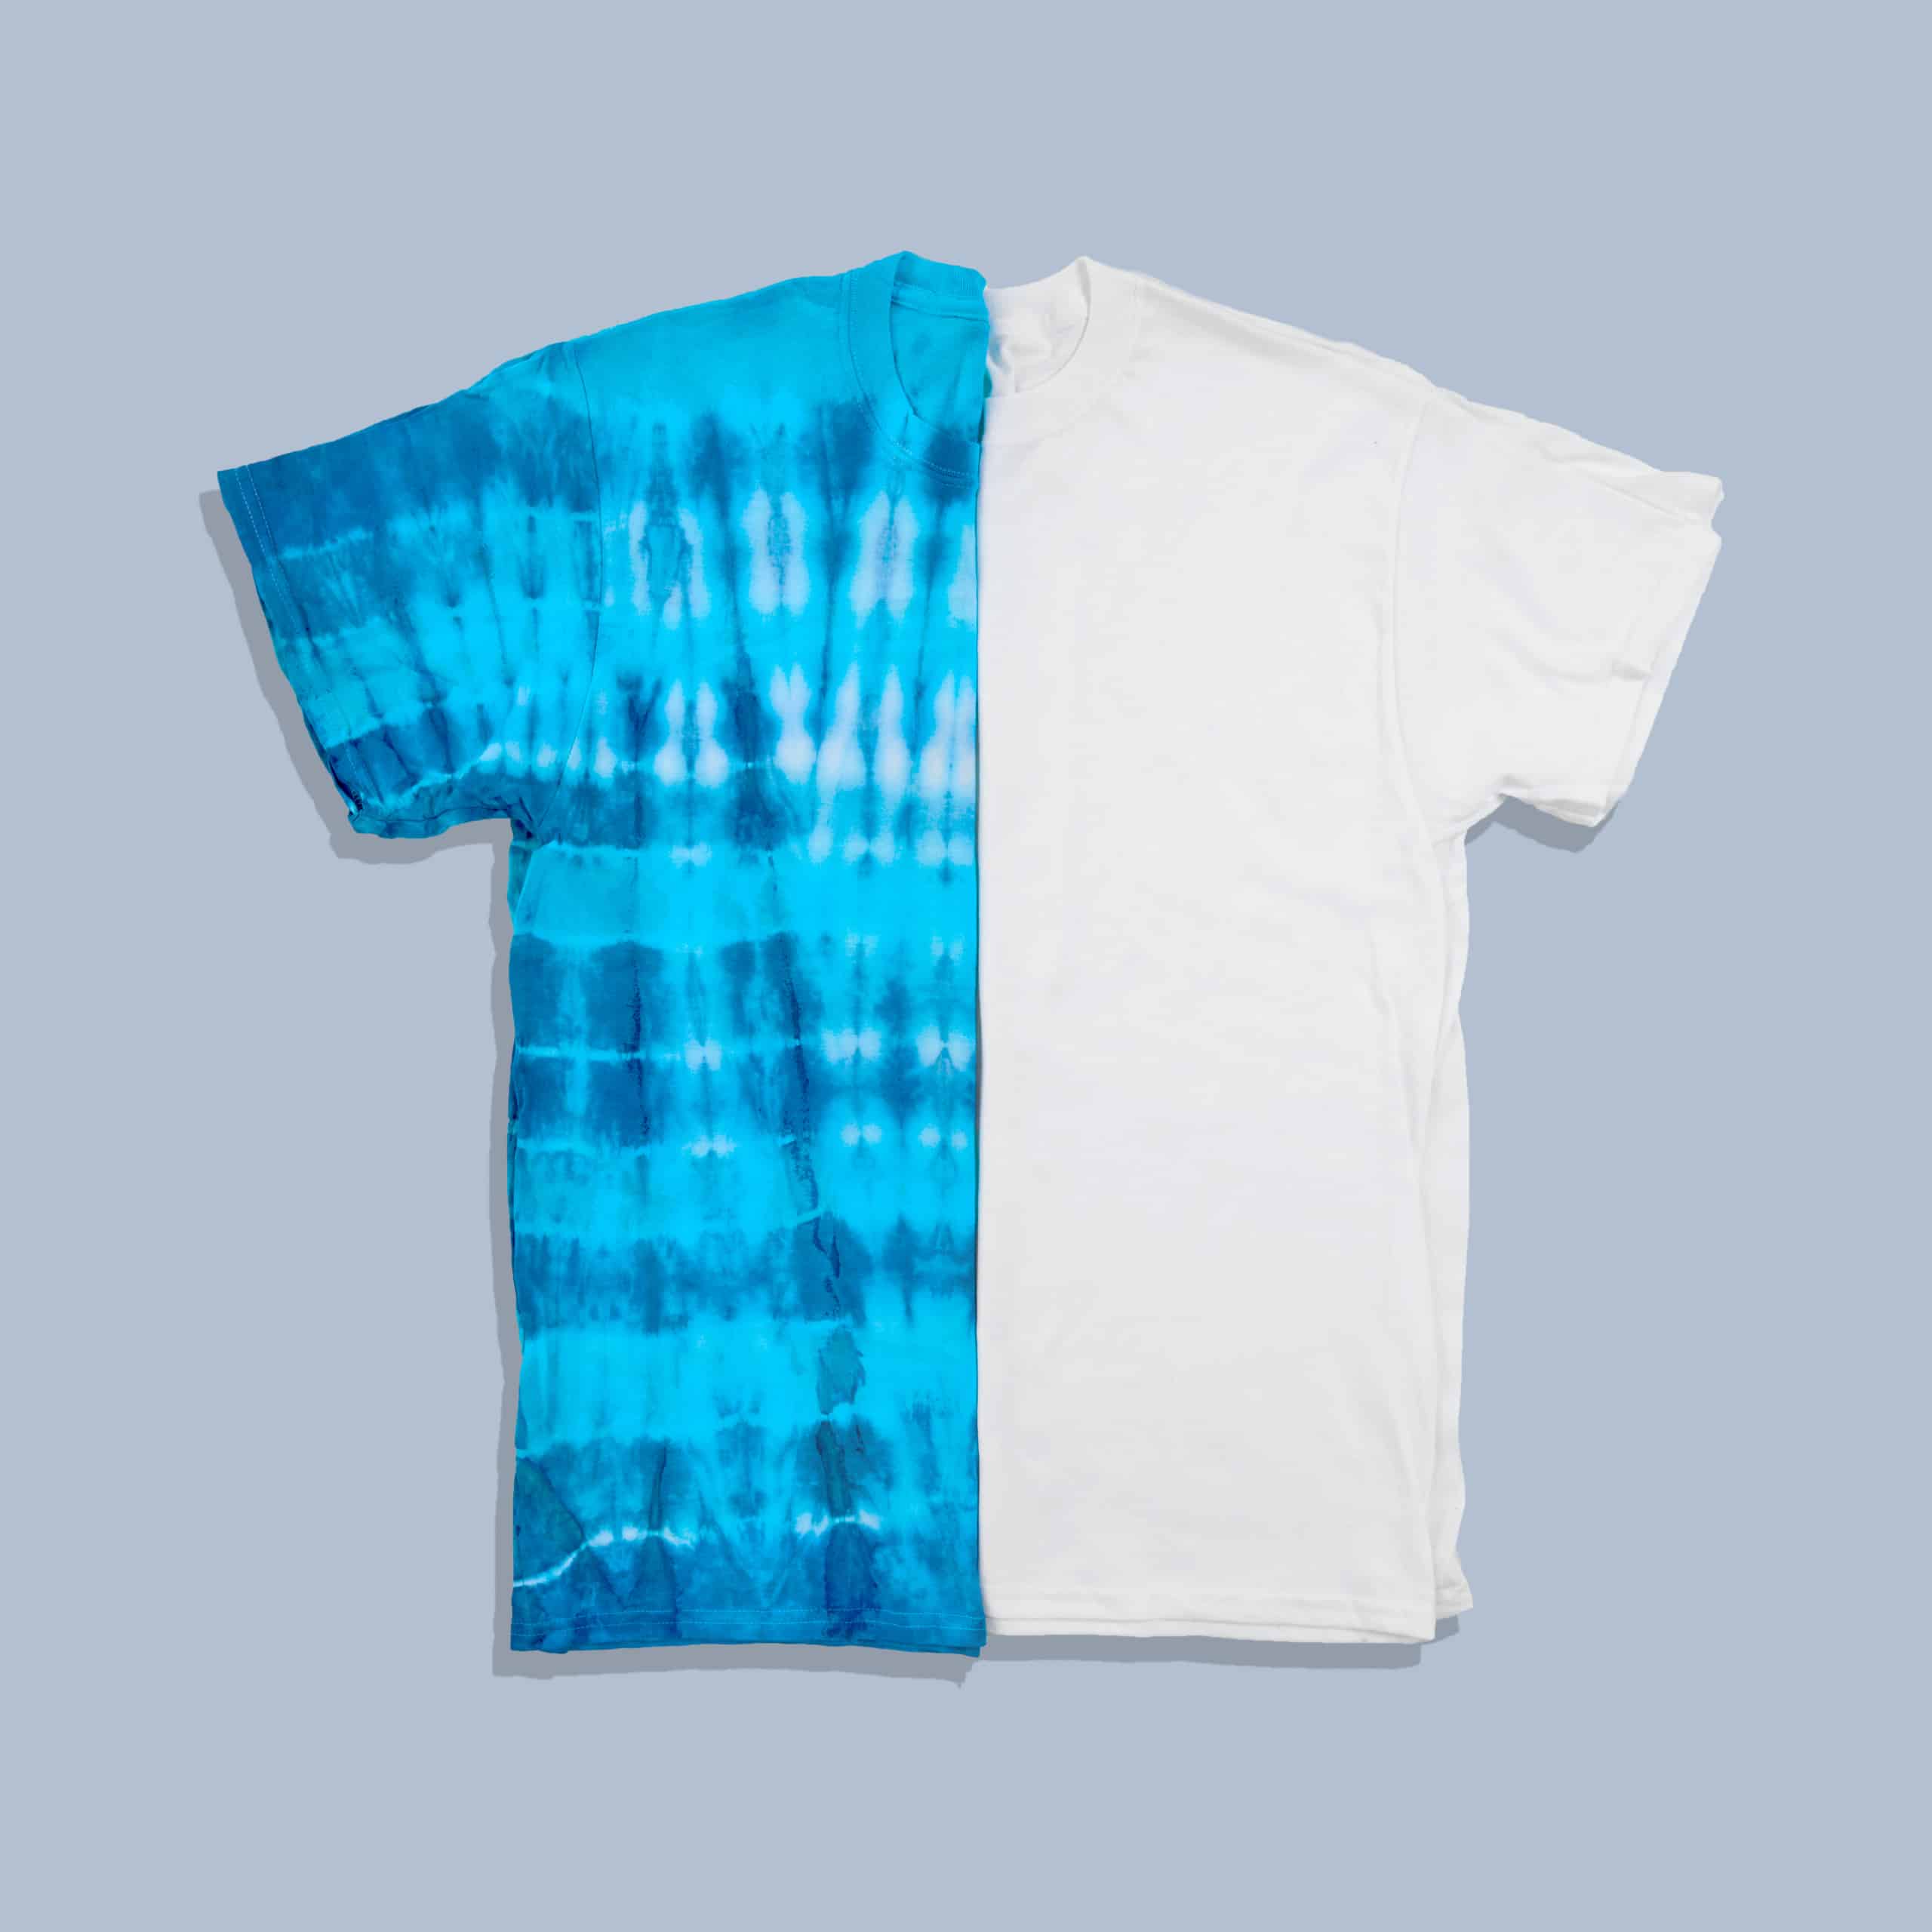 Non-Toxic Tie Dye using RIT DYE  DIY Blue Sweatsuit - Cloud Tie